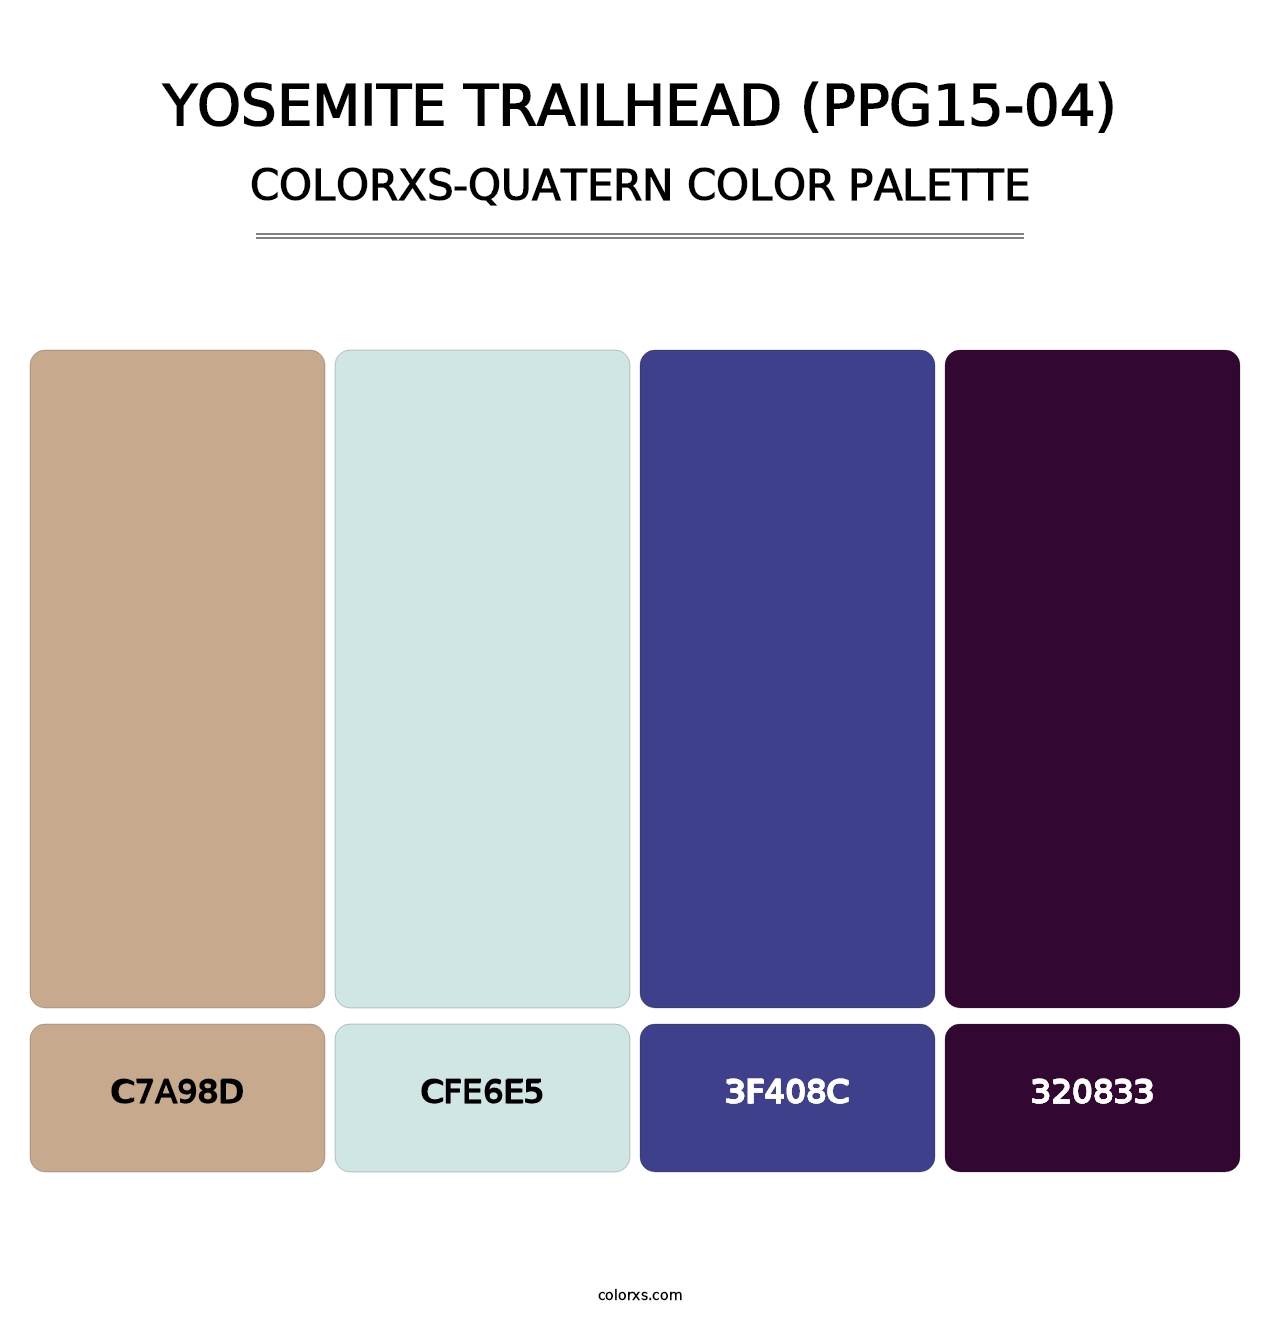 Yosemite Trailhead (PPG15-04) - Colorxs Quatern Palette